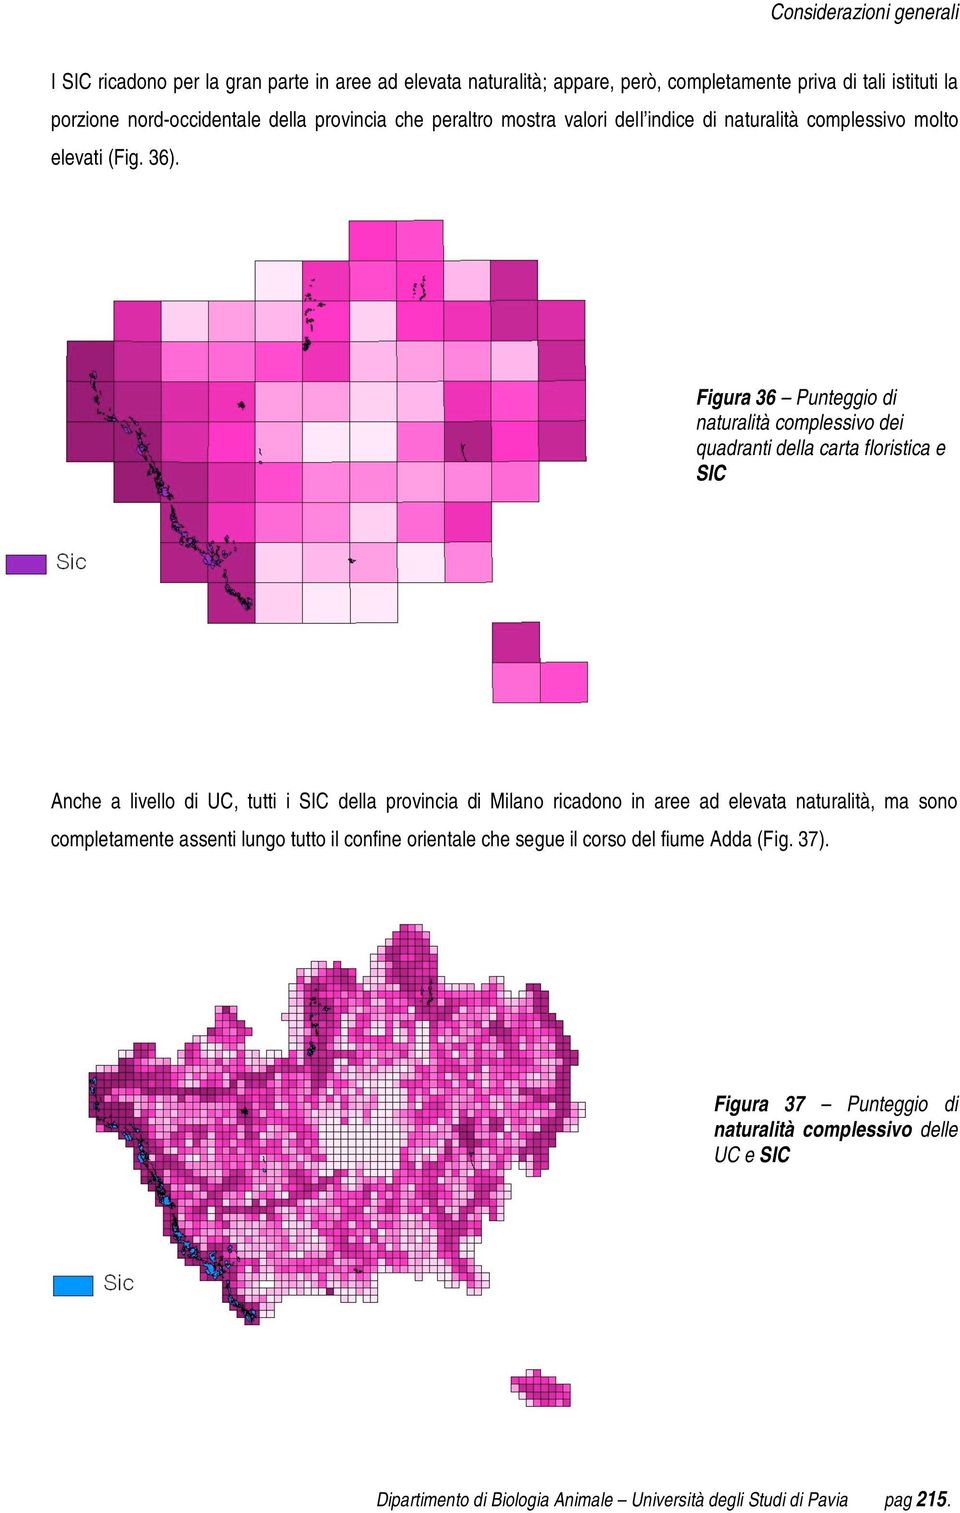 Figura 36 Punteggio di naturalità complessivo dei quadranti della carta floristica e SIC Anche a livello di UC, tutti i SIC della provincia di Milano ricadono in aree ad